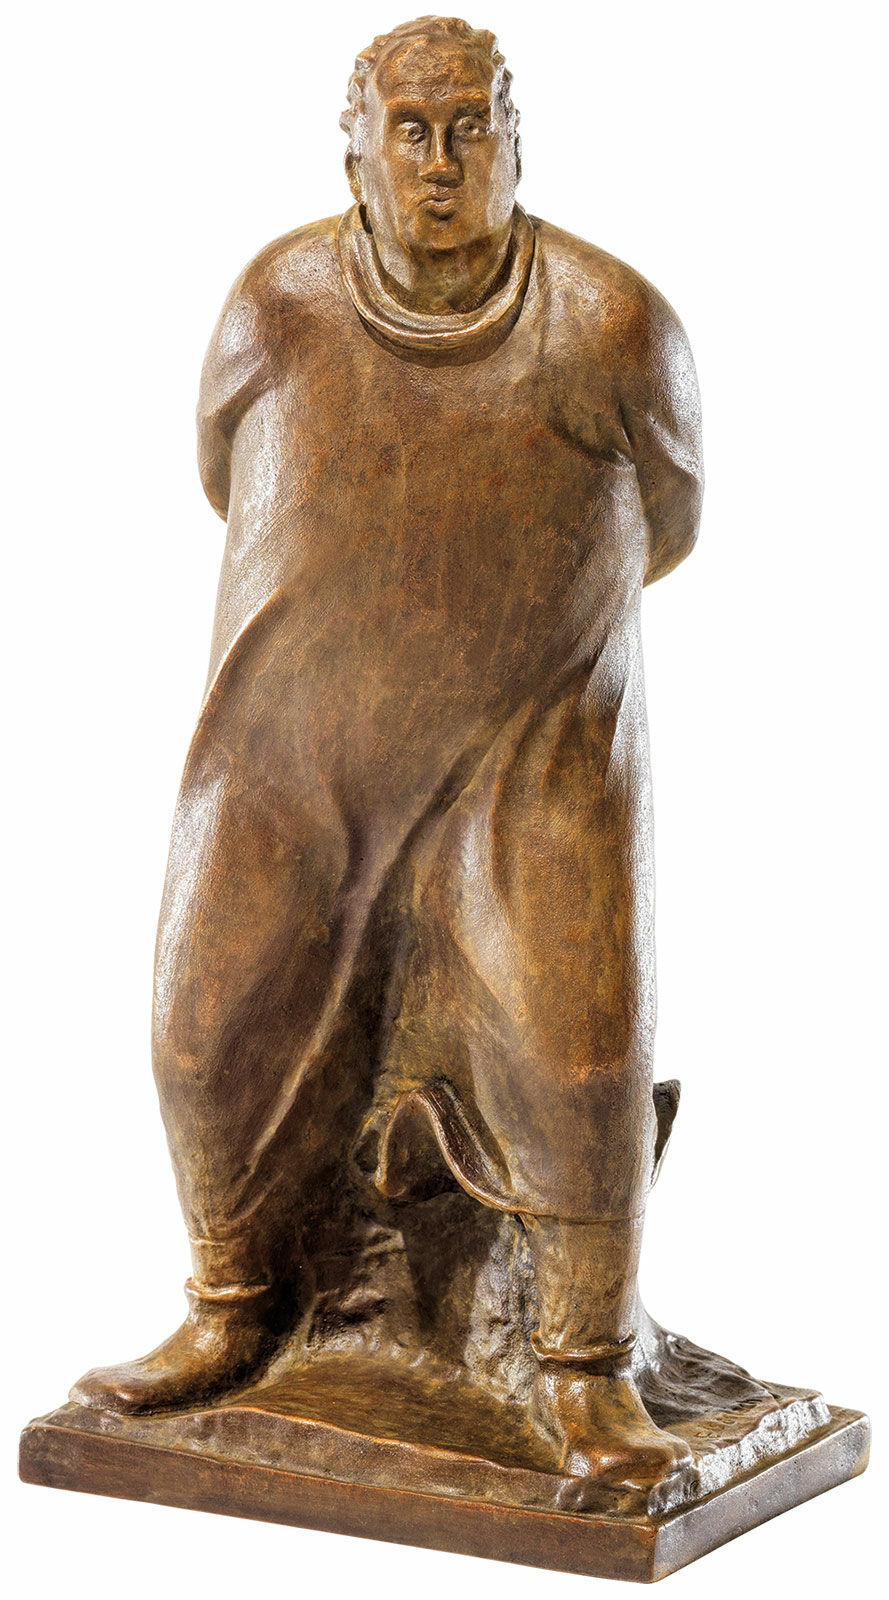 Skulptur "Der Spaziergänger" (1912), Reduktion in Bronze von Ernst Barlach